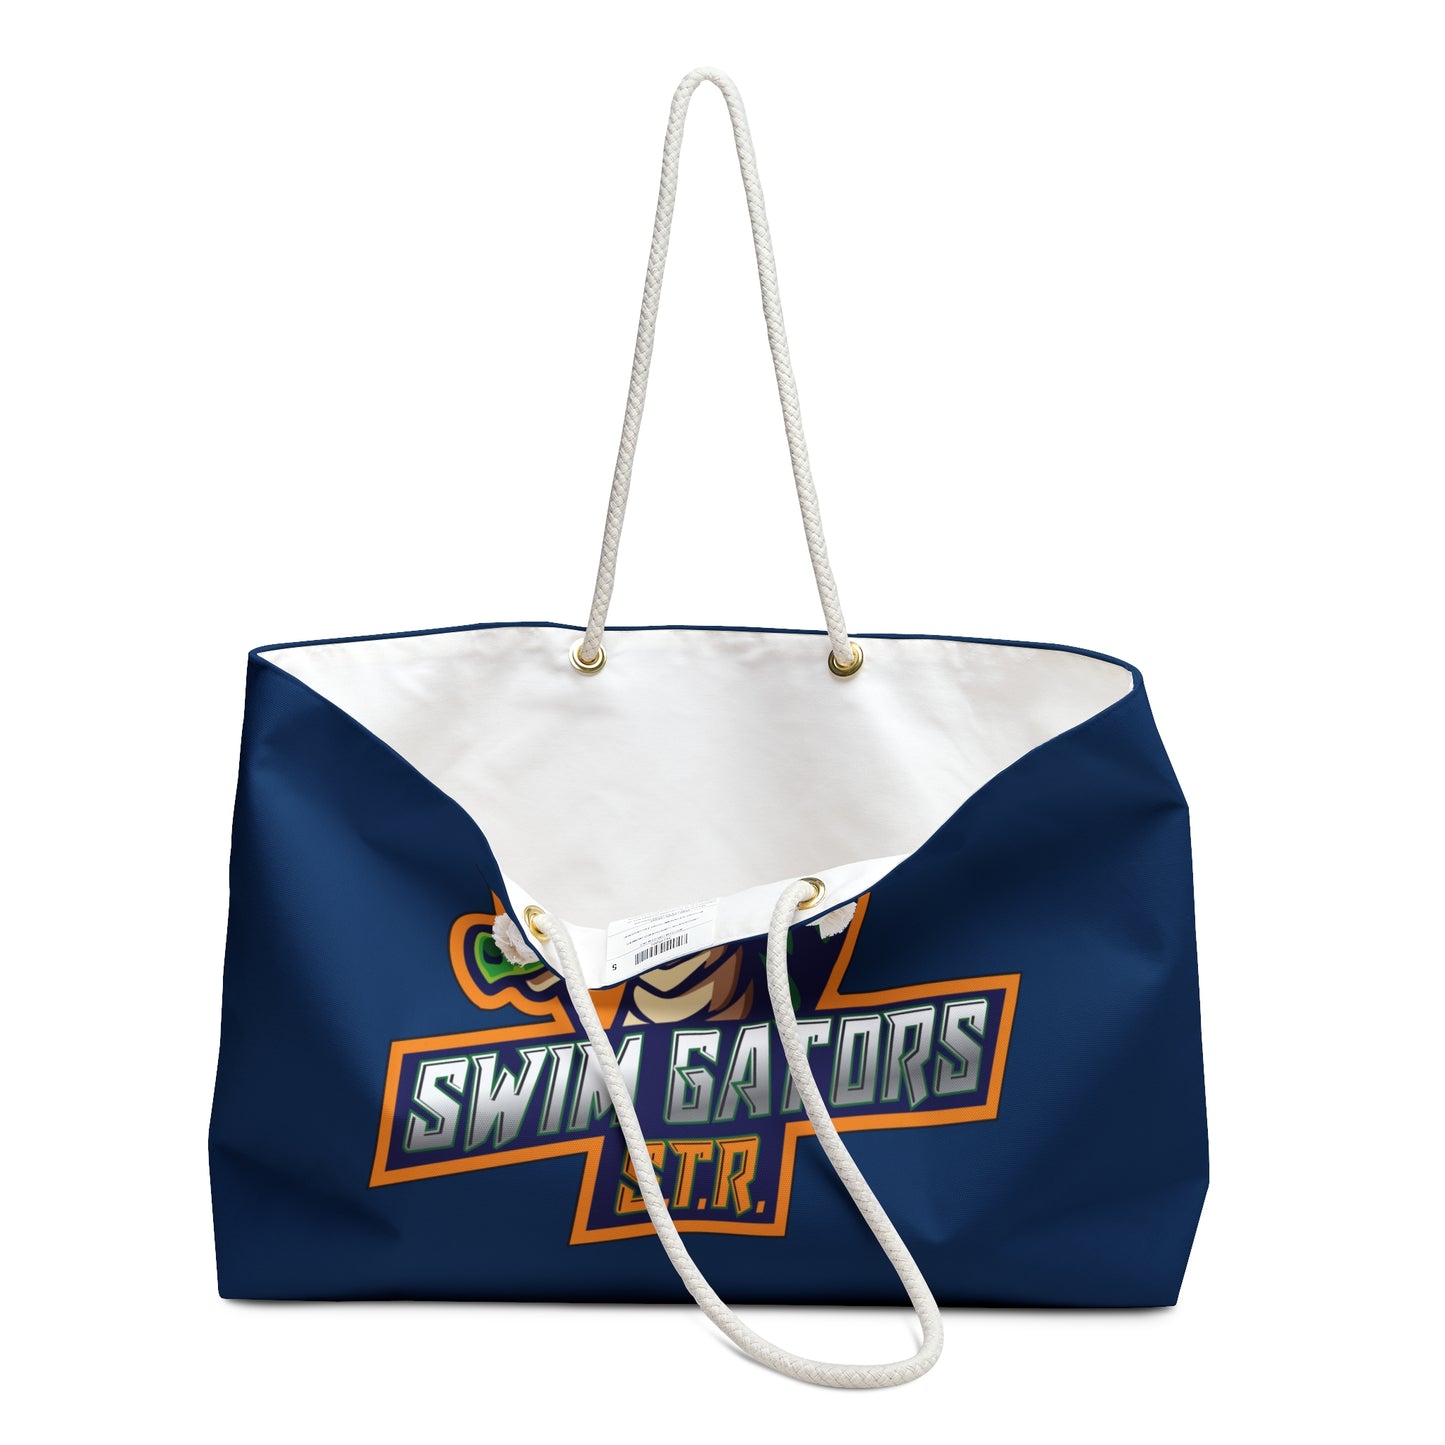 Gators Personalized Weekender Bag - Navy